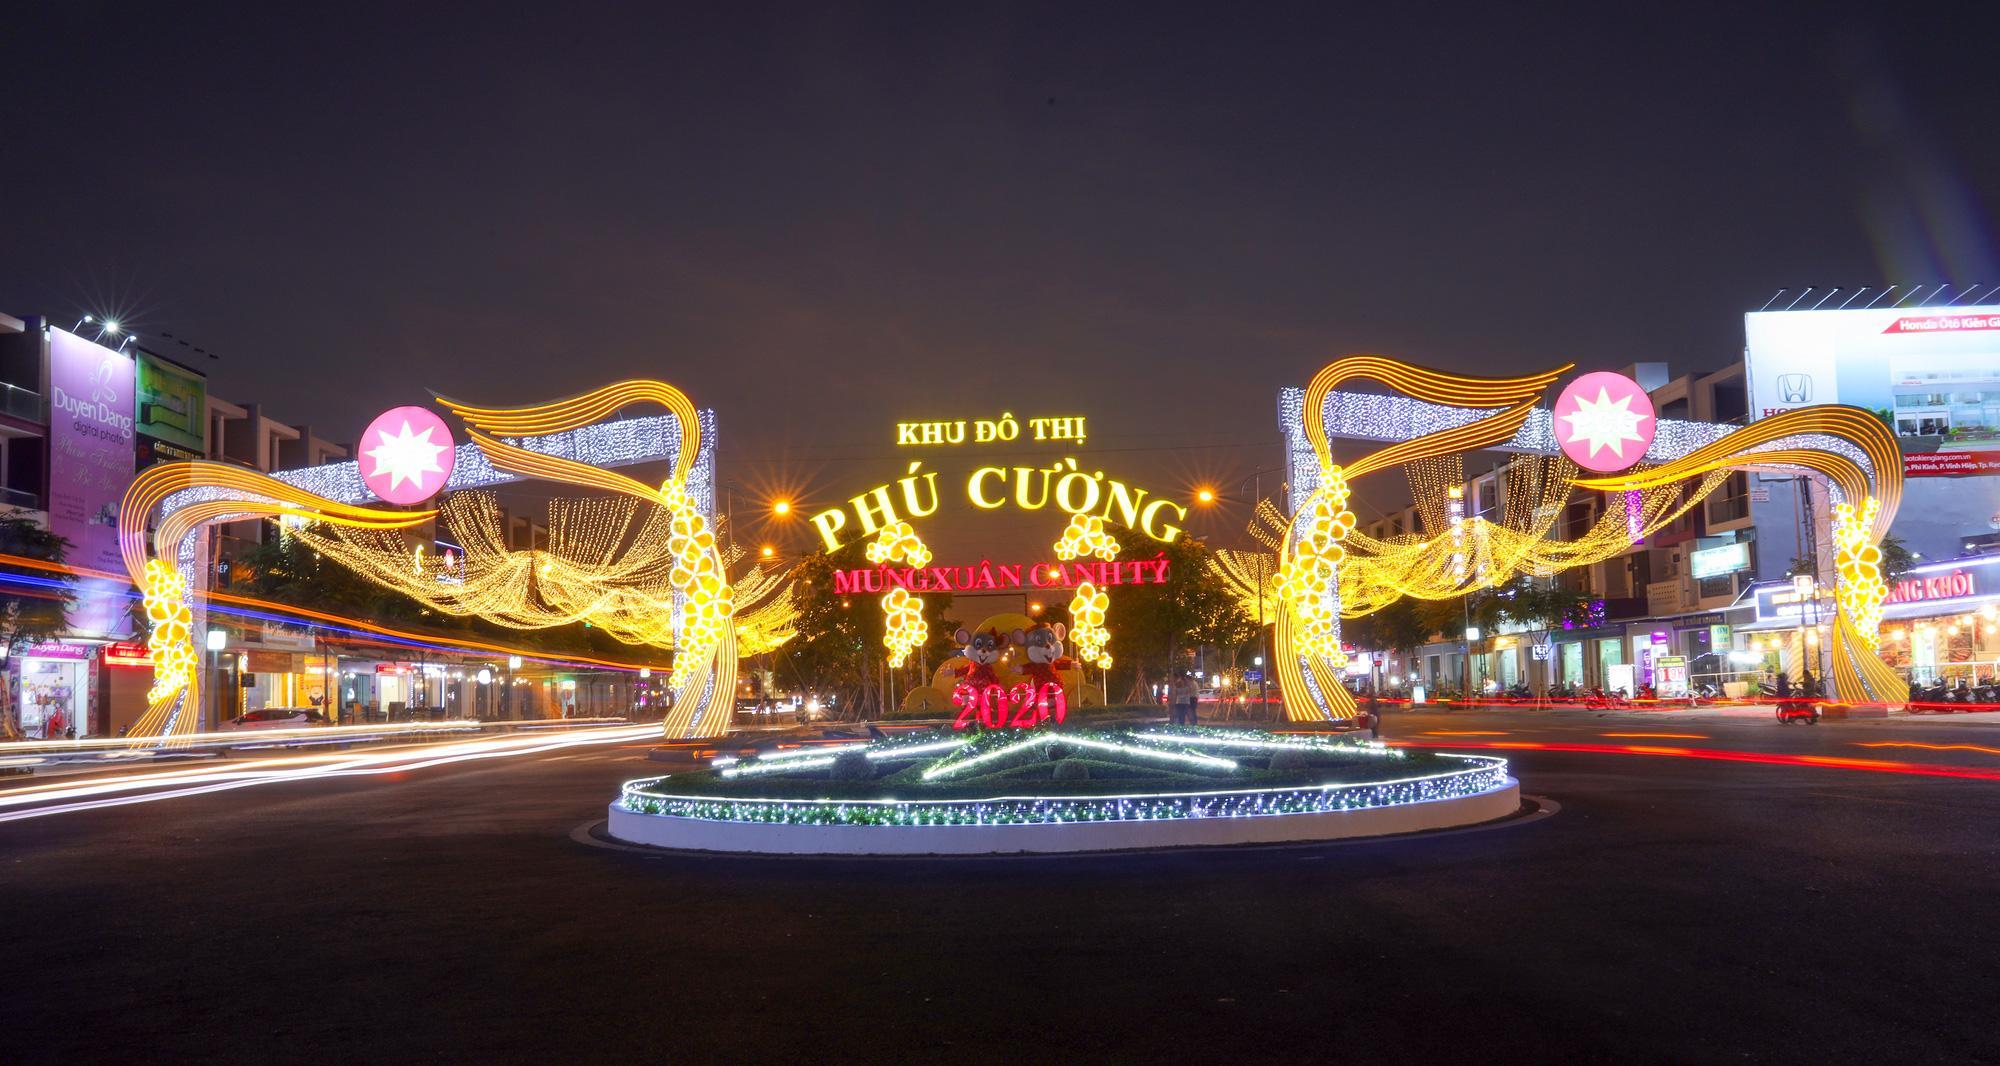 Mẫu cổng chào Tết ở khu đô thị Phú Cường cực đẹp